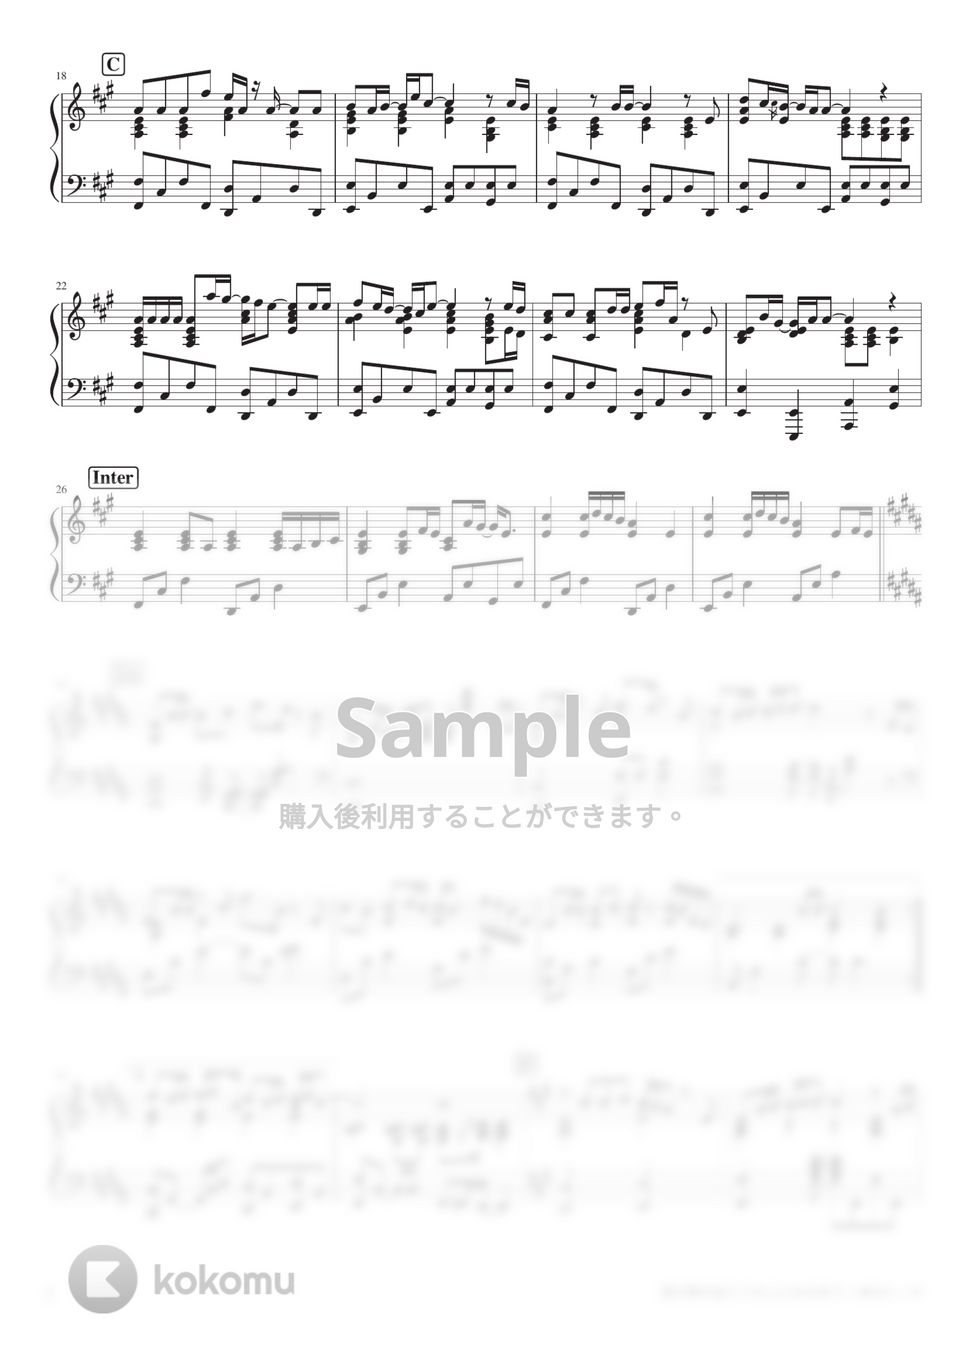 傘村トータ - 僕が夢を捨てて大人になるまで (PianoSolo) by 深根 / Fukane